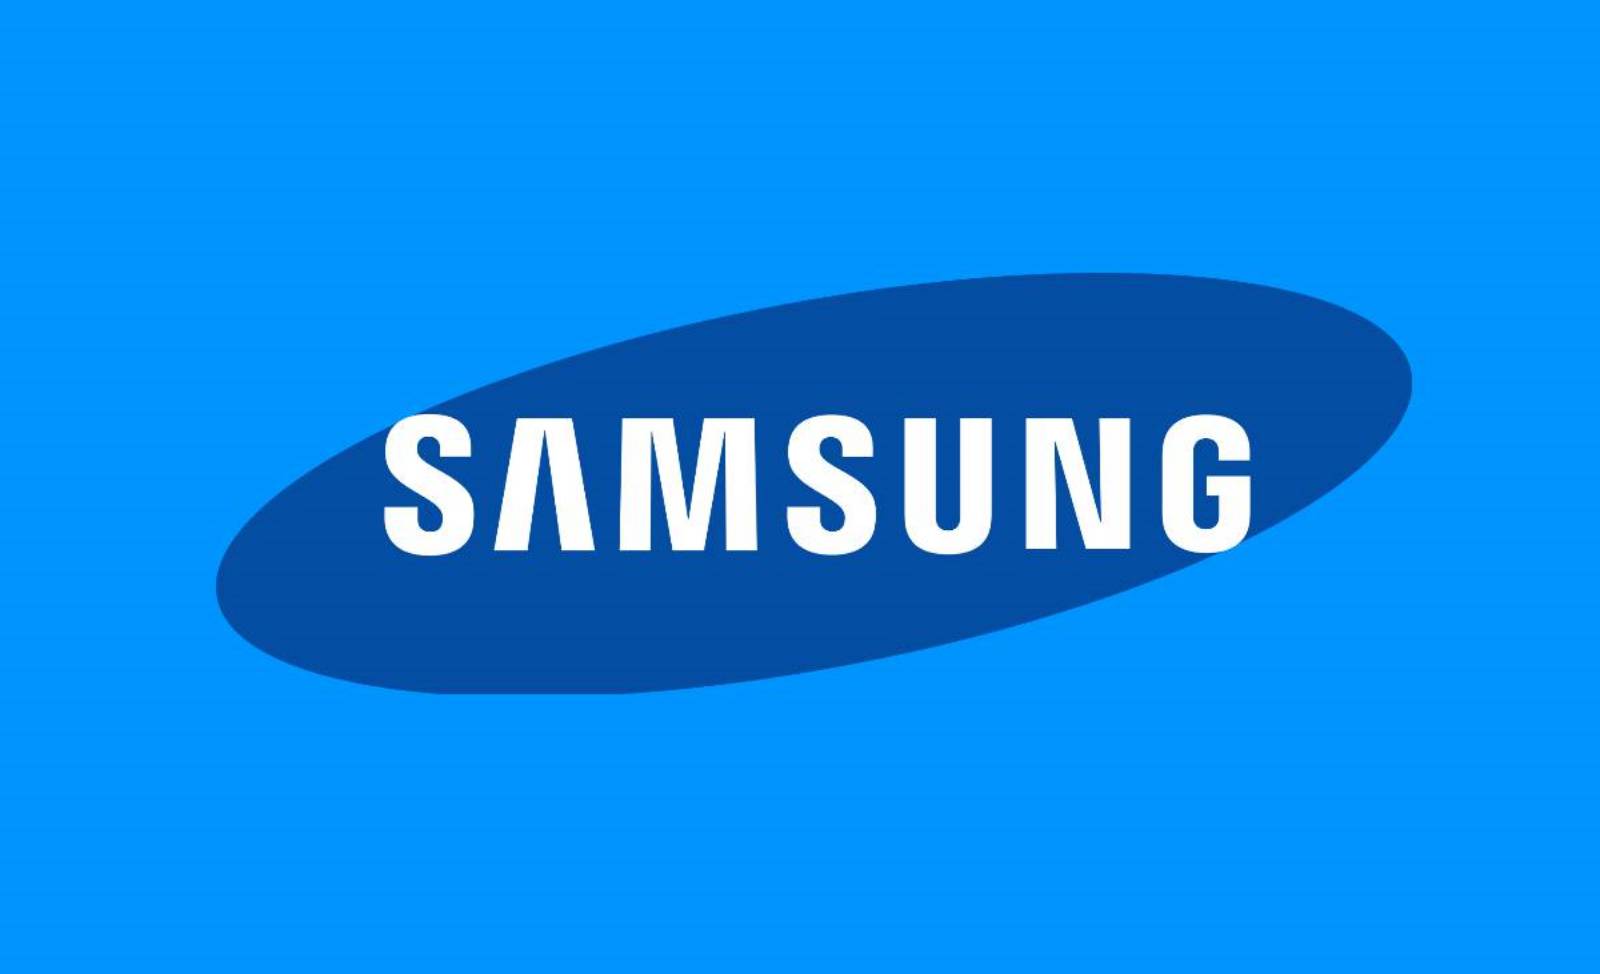 Samsungin premium-puhelimet